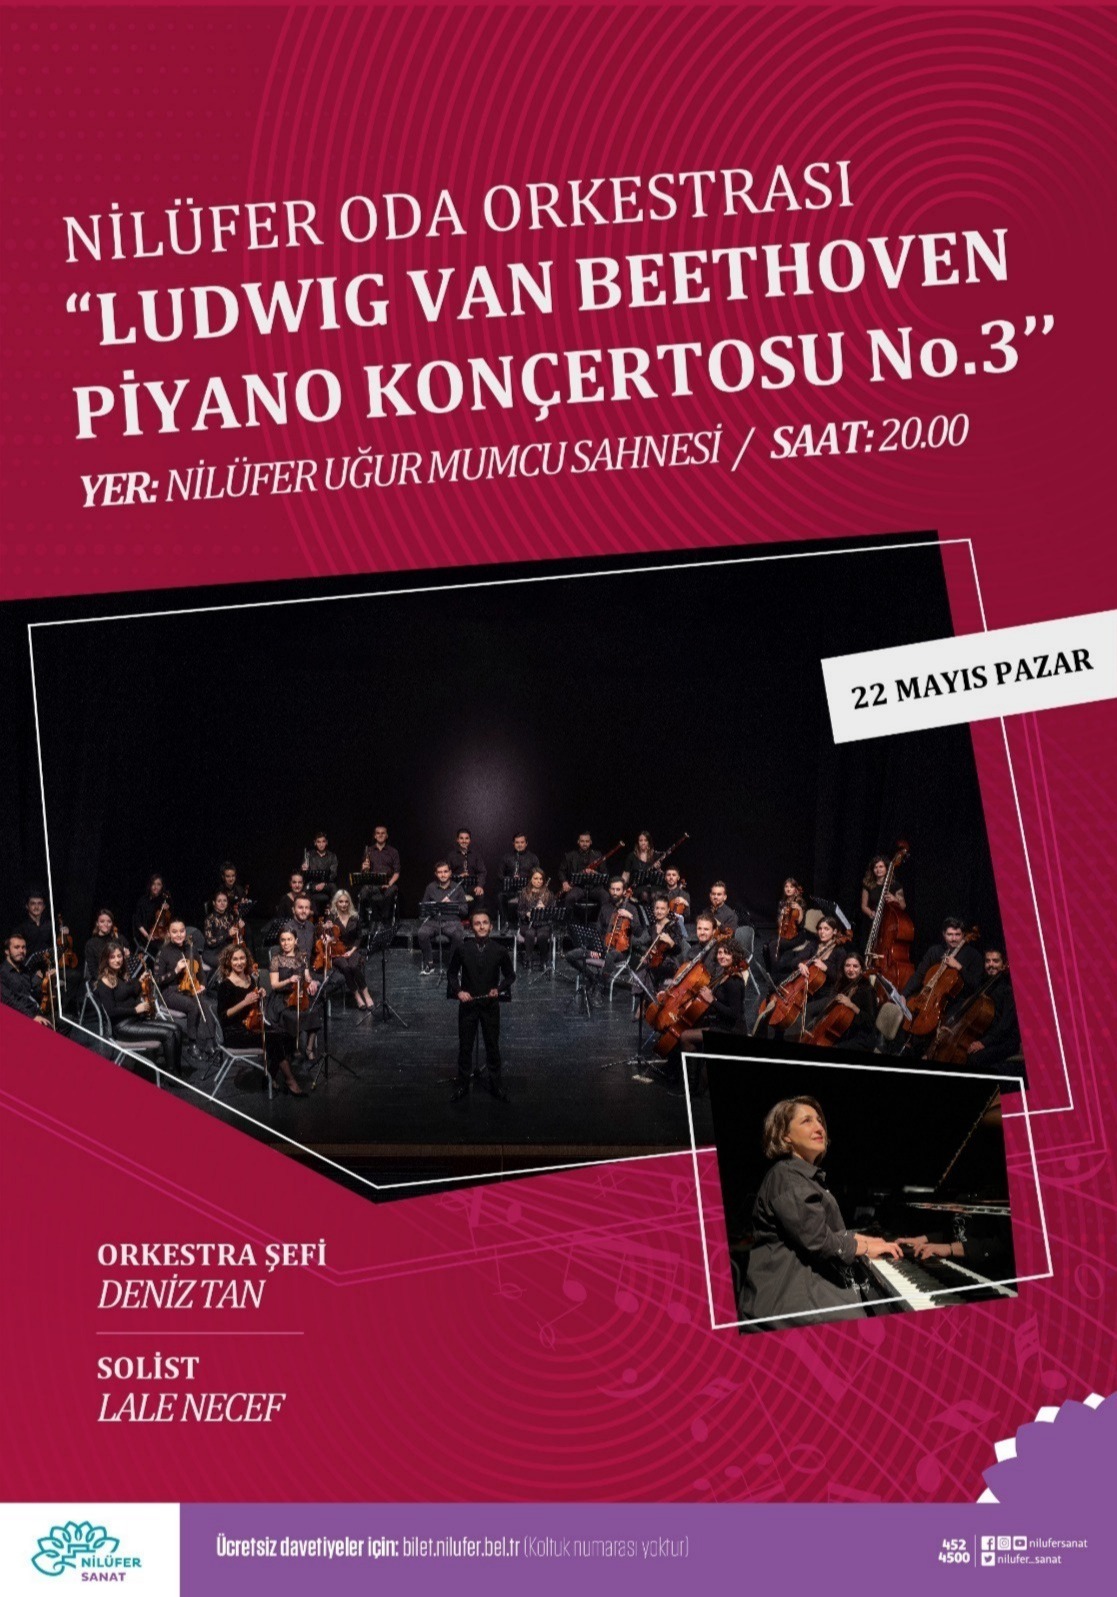 Nilüfer Oda Orkestrası " Ludwig Van Beethoven  Piyano Konçertosu No.3 " Konseri Şef: Deniz Tan Solist: Lale Necef 